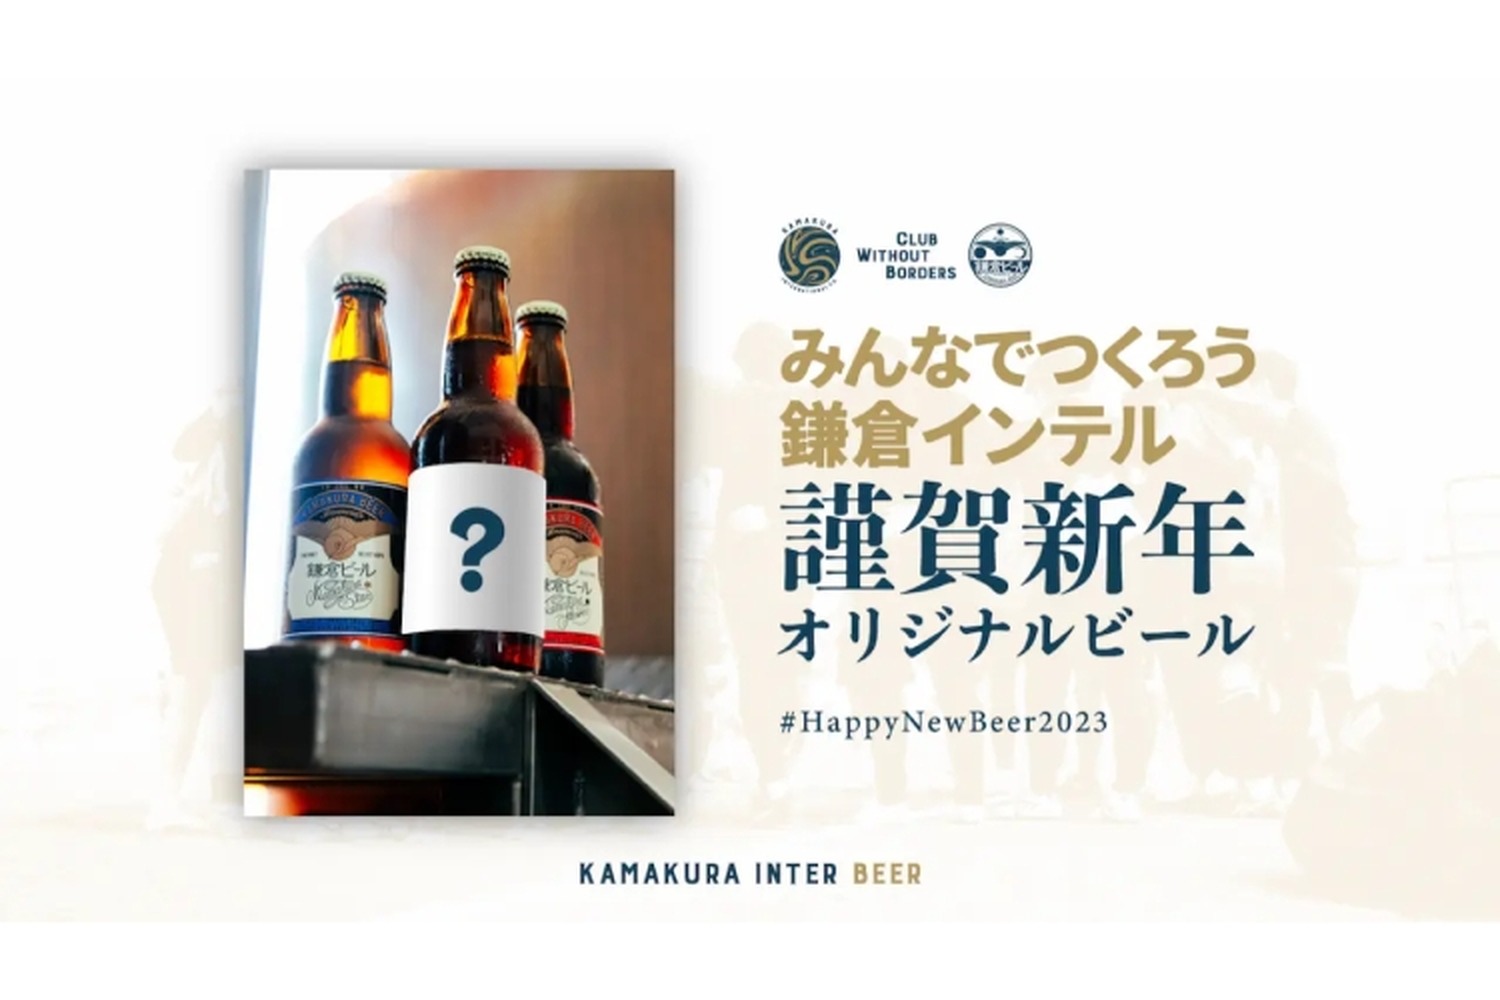 オリジナルビールが作れる！「みんなでつくろう鎌倉インテル 謹賀新年オリジナルビール」開始